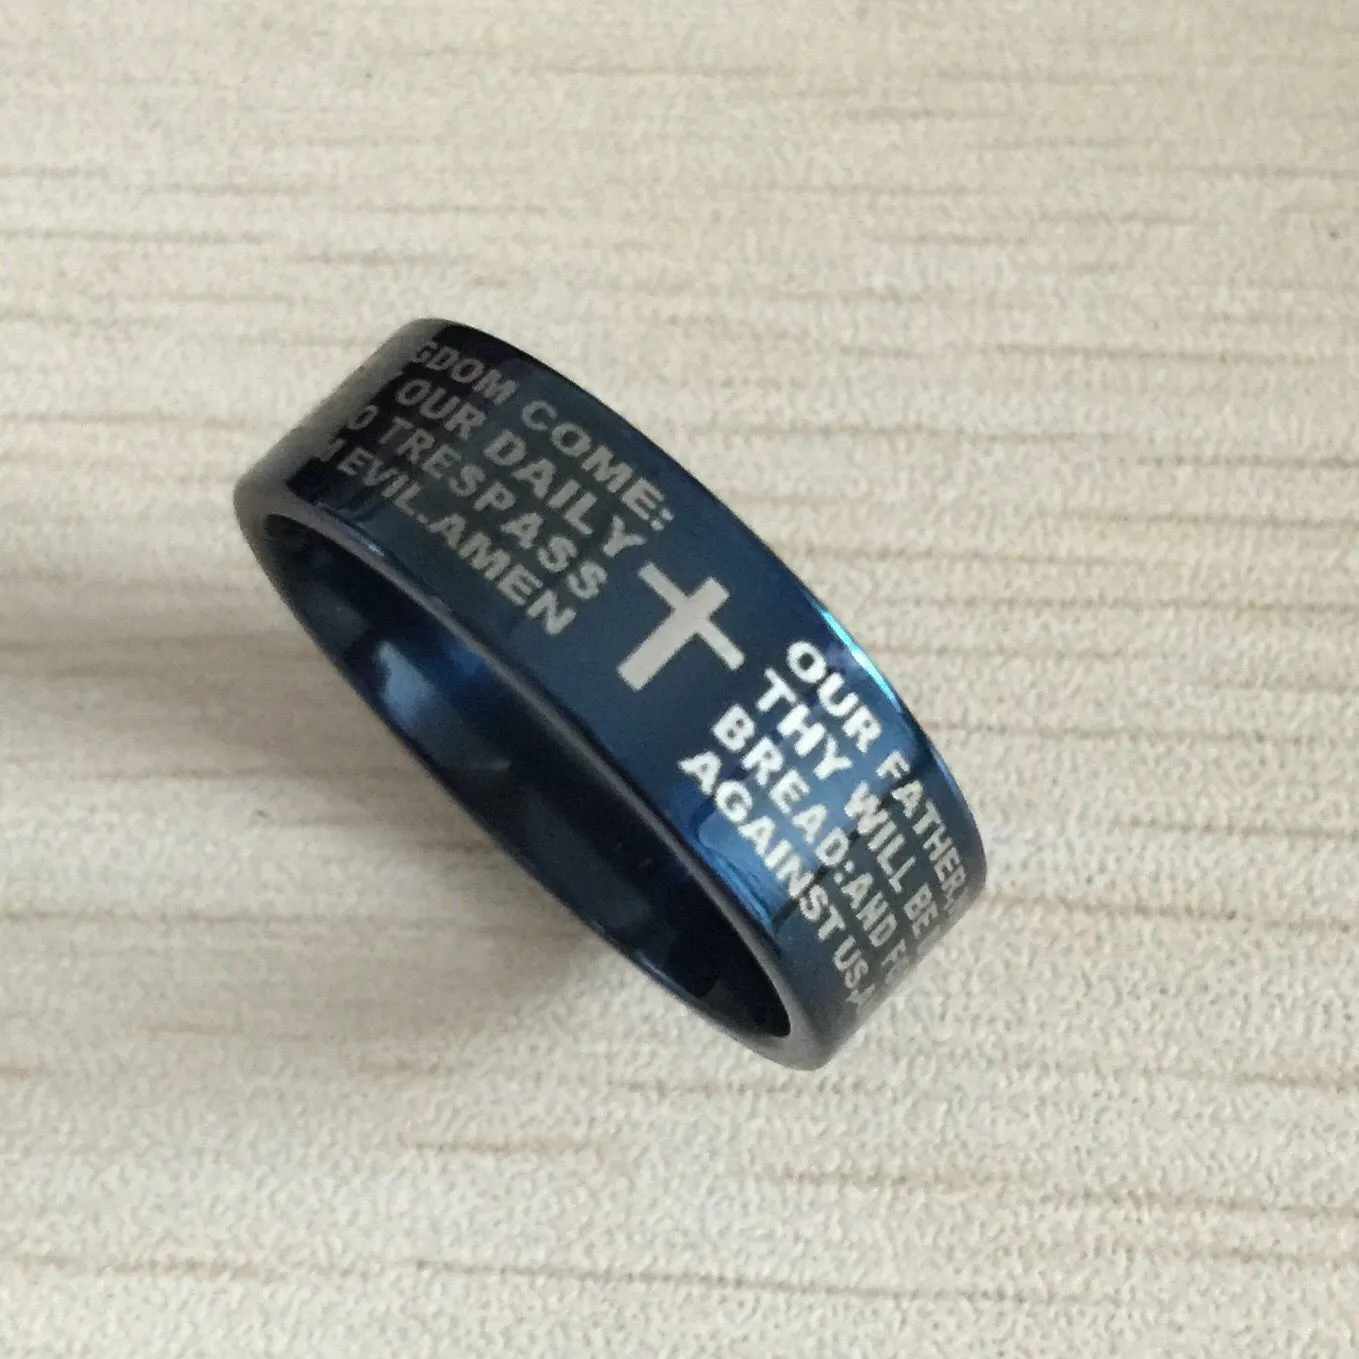 الرجال الأزرق الإنجليزية الكتاب المقدس خاتم 8 مللي متر 316 التيتانيوم الصلب الصليب رسالة الصلاة الكتاب المقدس الزفاف الفرقة سيد الخاتم الرجال النساء